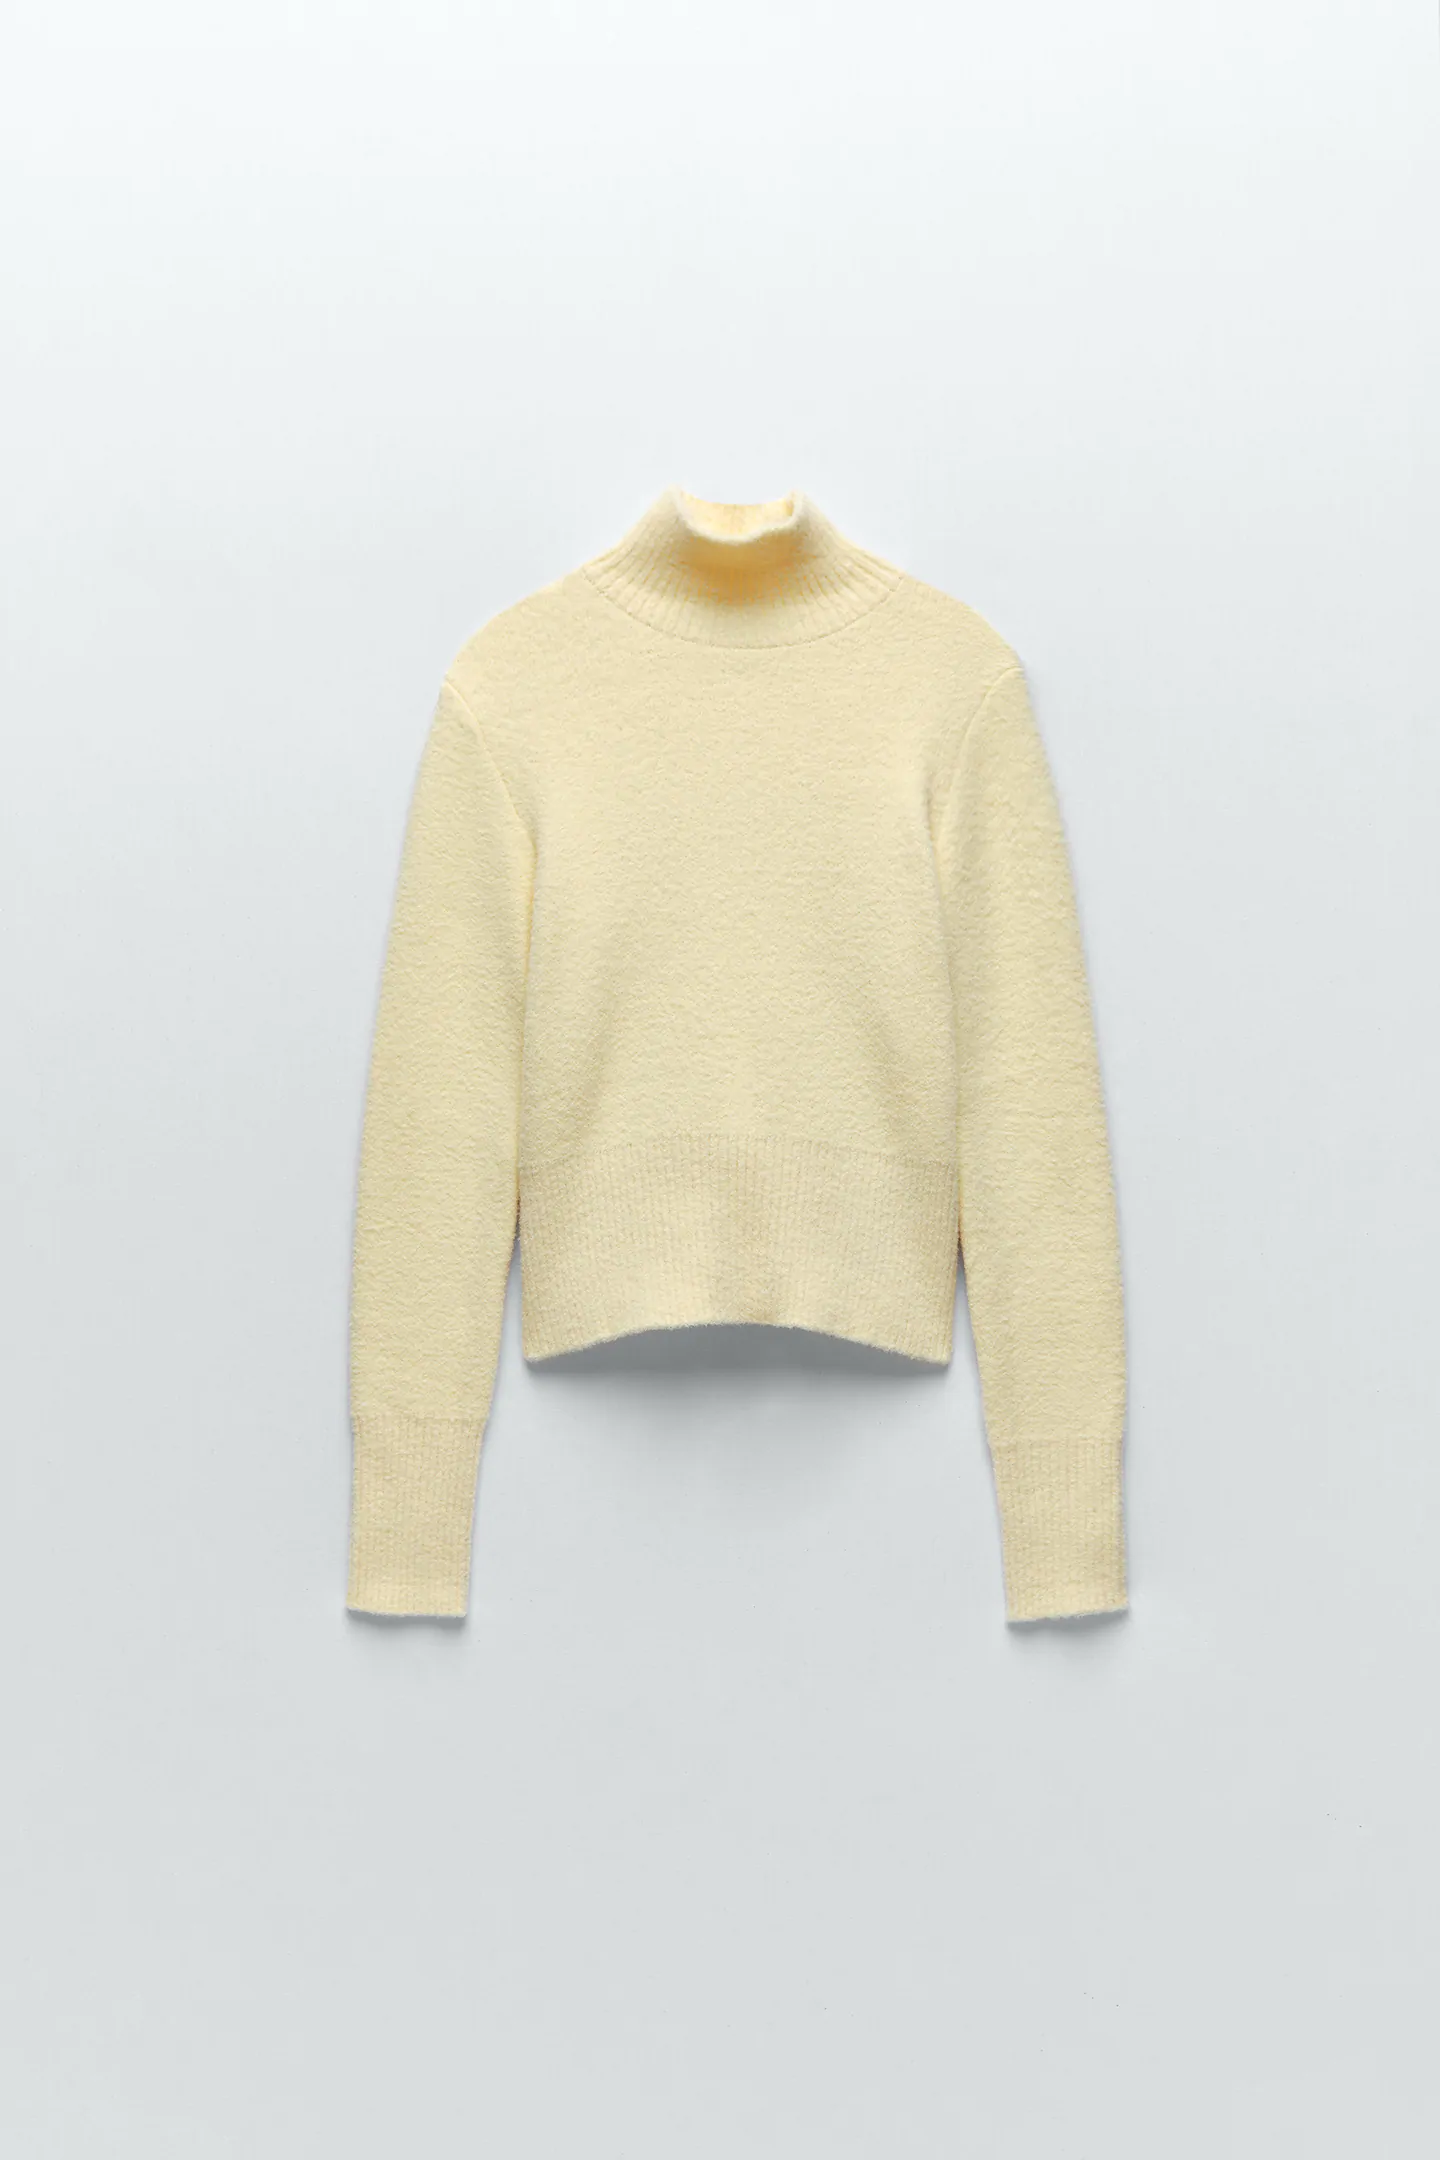 Zara yellow sweater